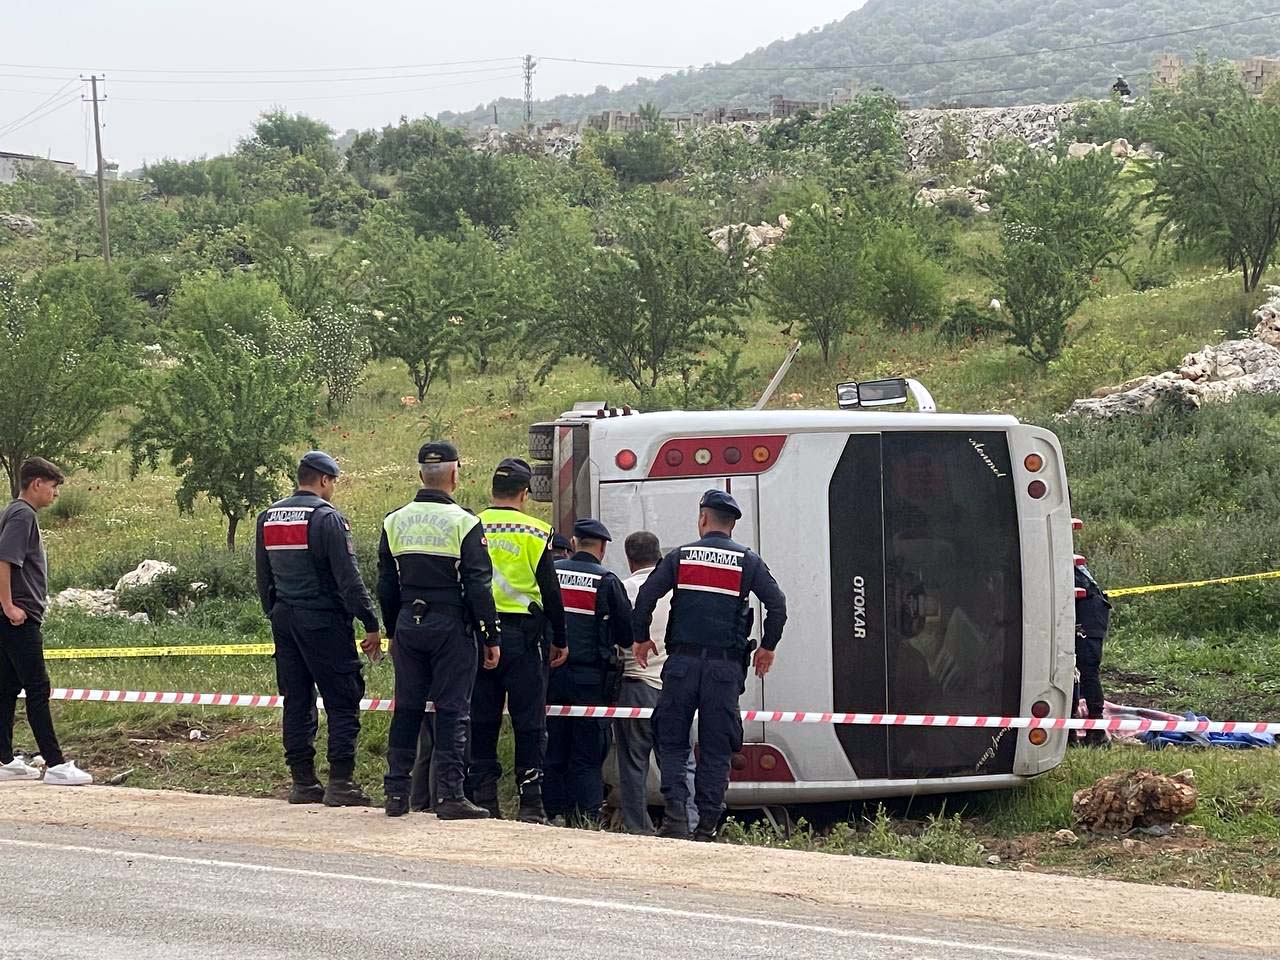 Gaziantep’te devrilen yolcu midibüsünde 1 astsubay öldü, 17 kişi yaralandı